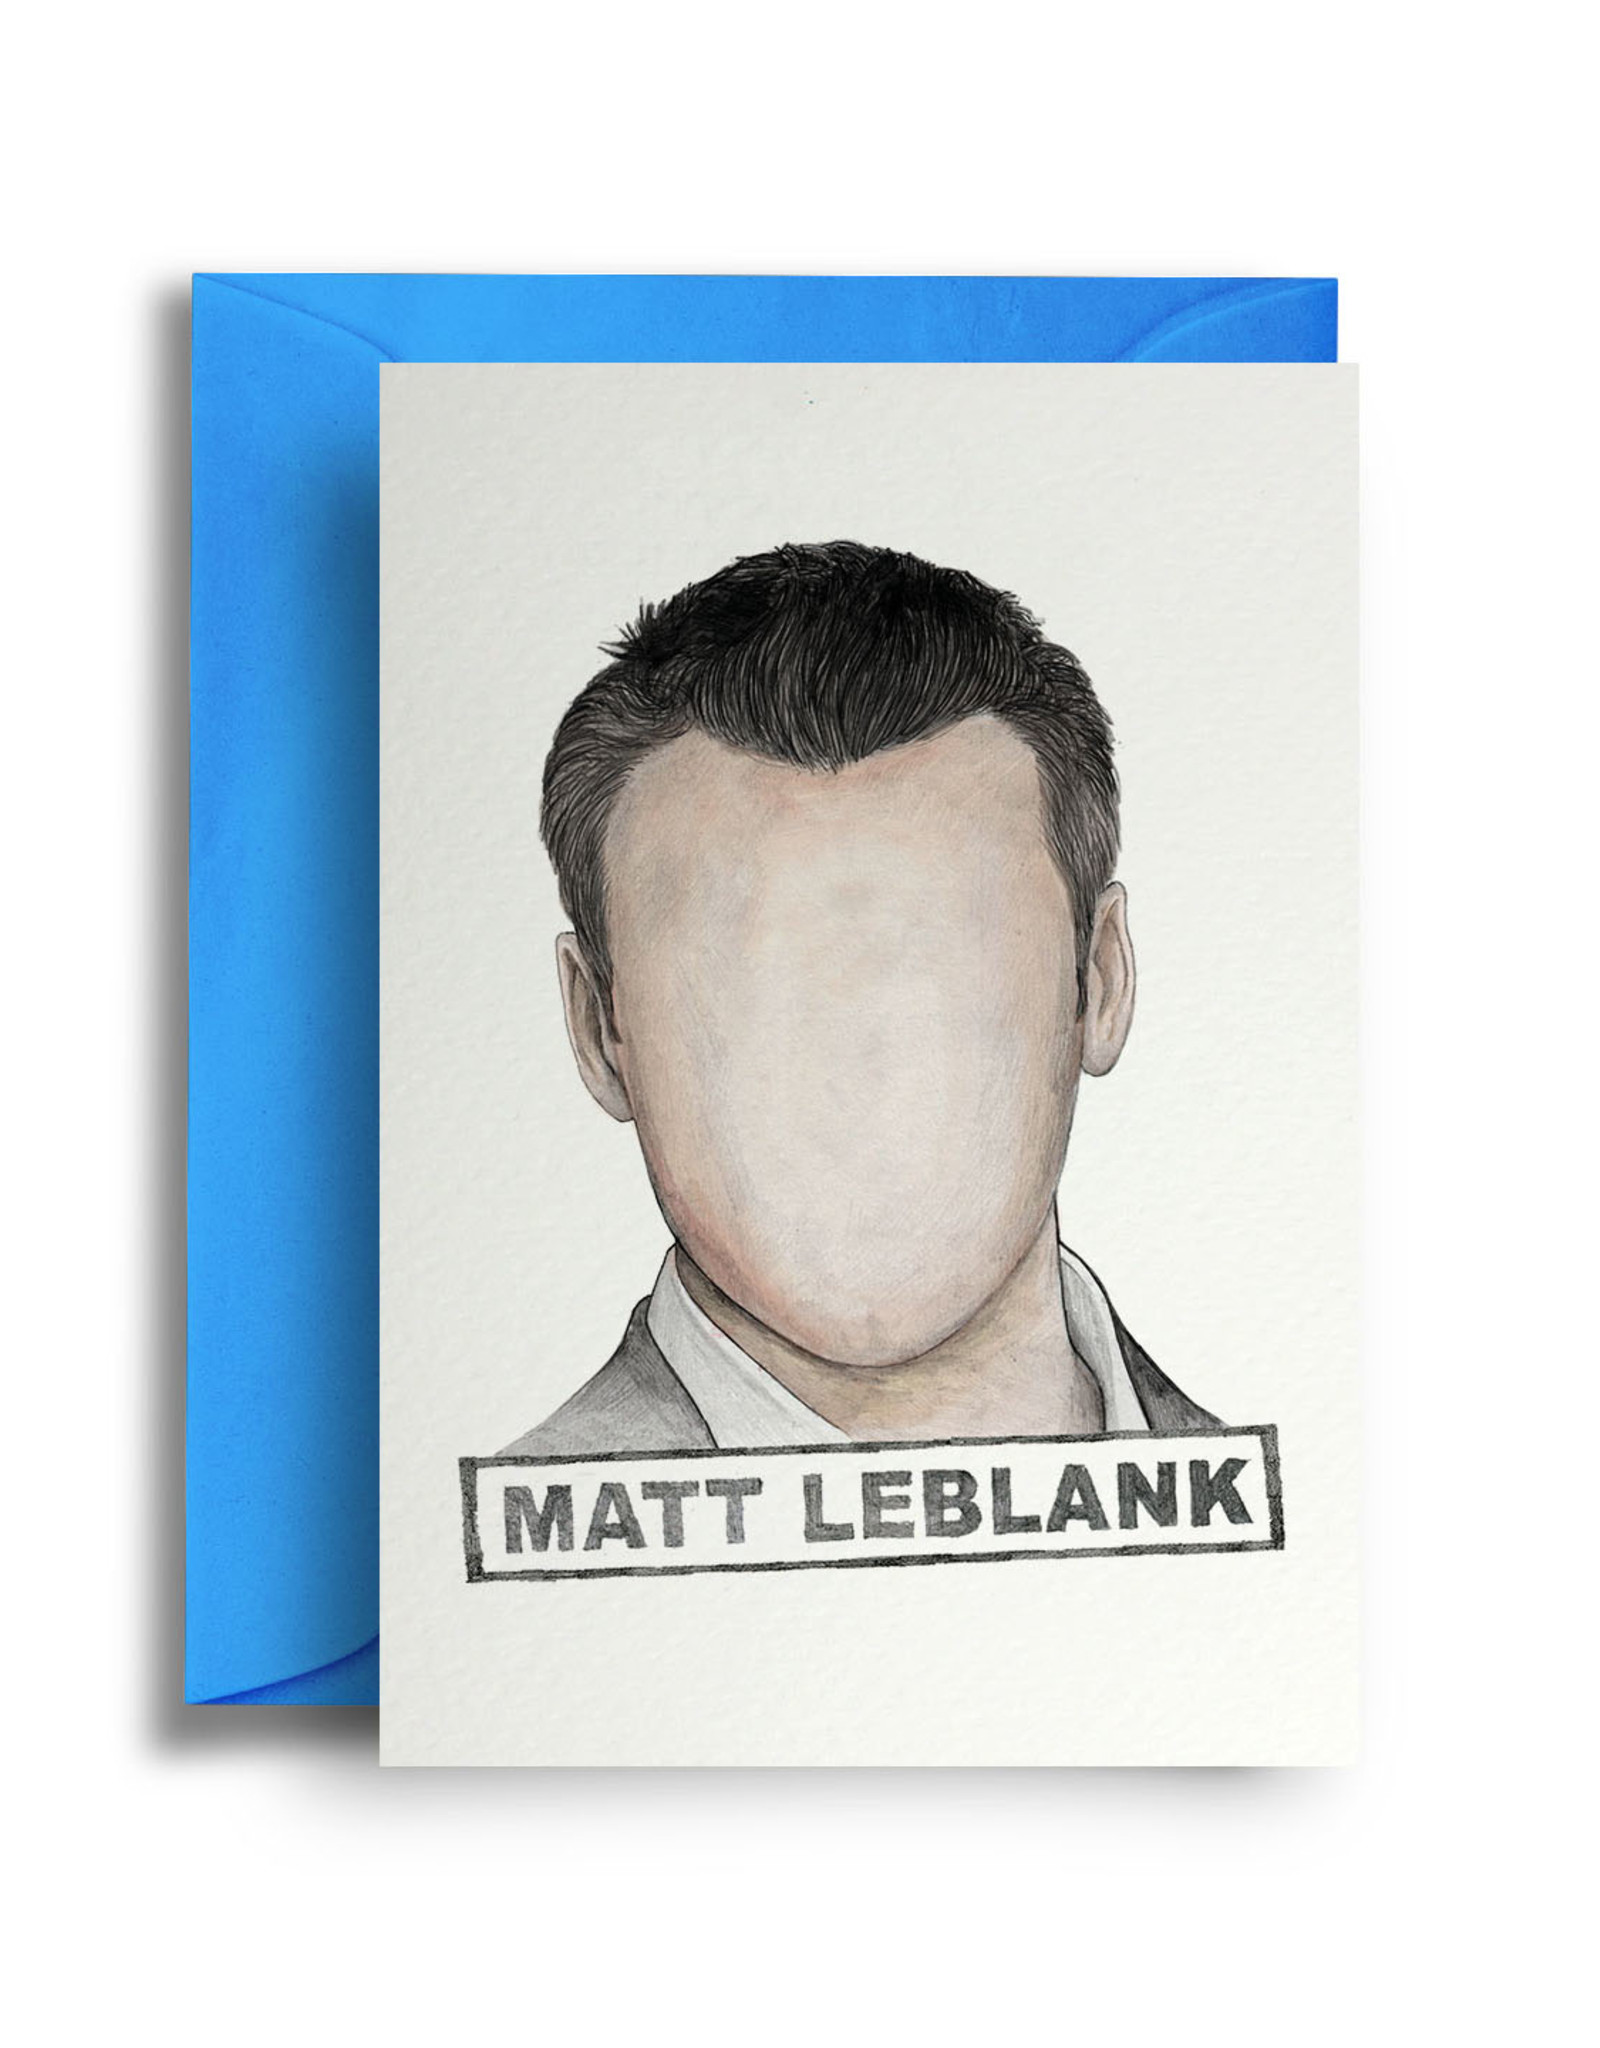 Matt Leblank Greeting Card